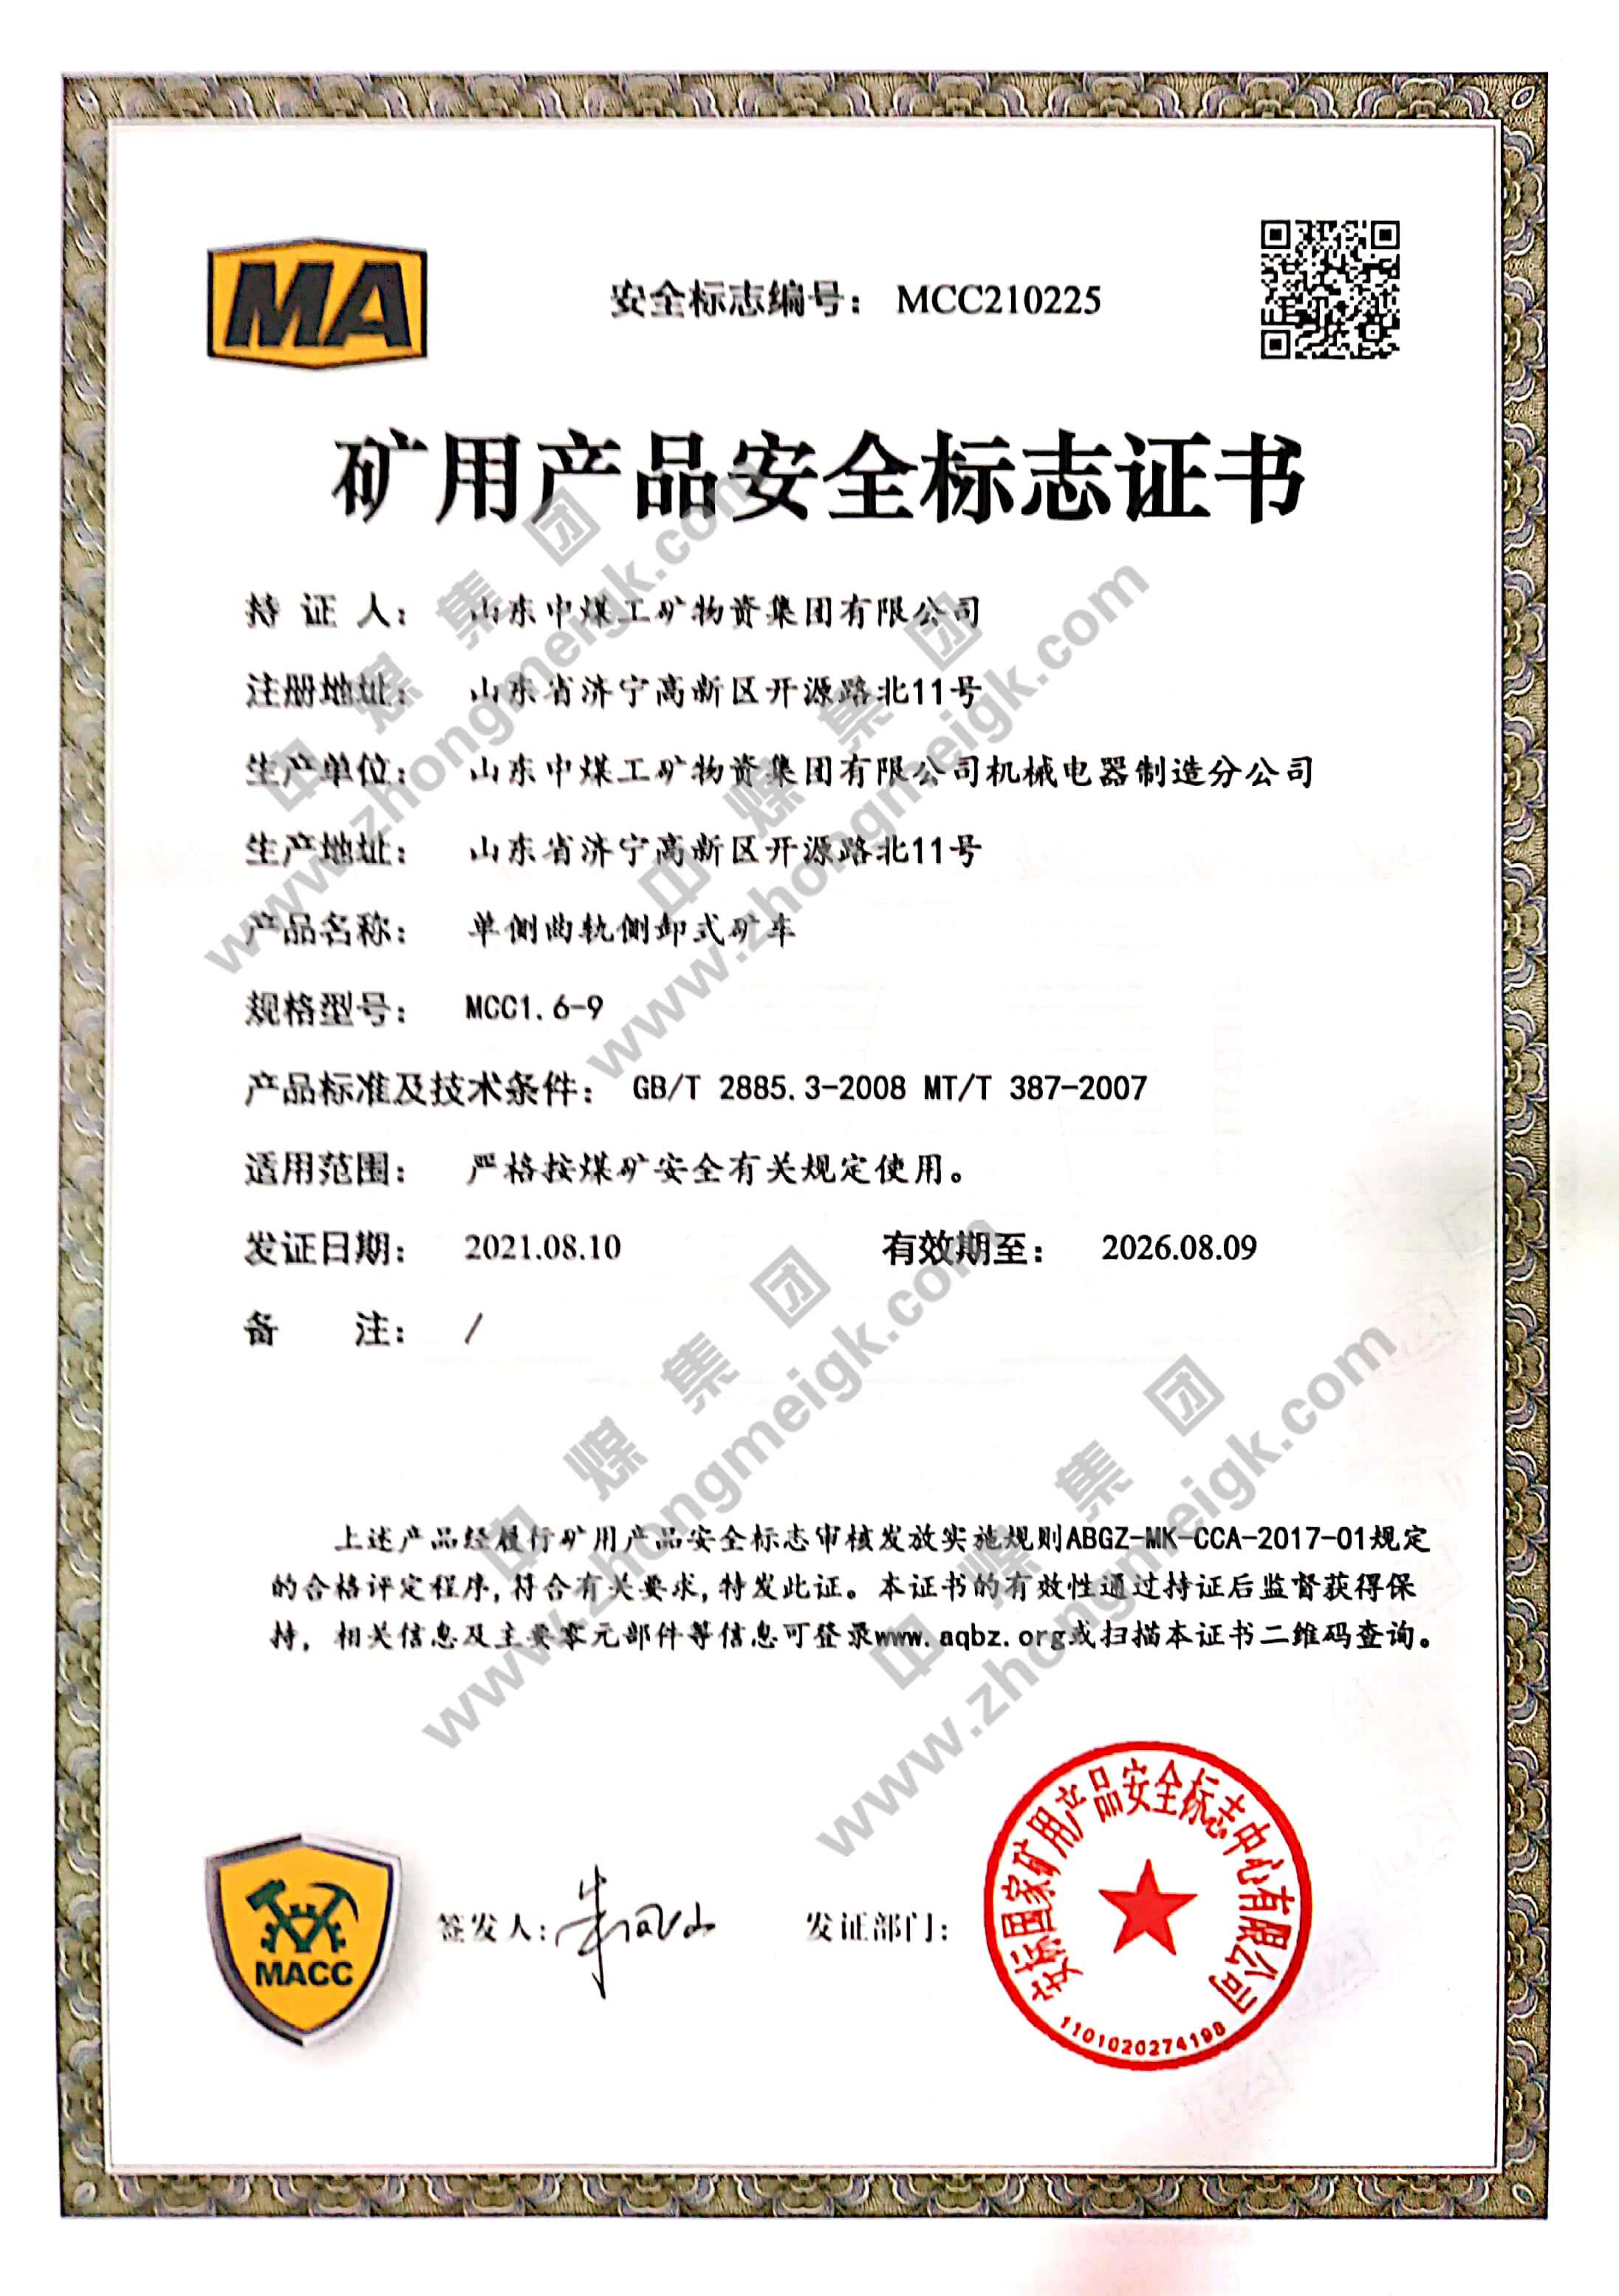 热烈祝贺中煤集团新增12项国家矿用产品安全标志证书